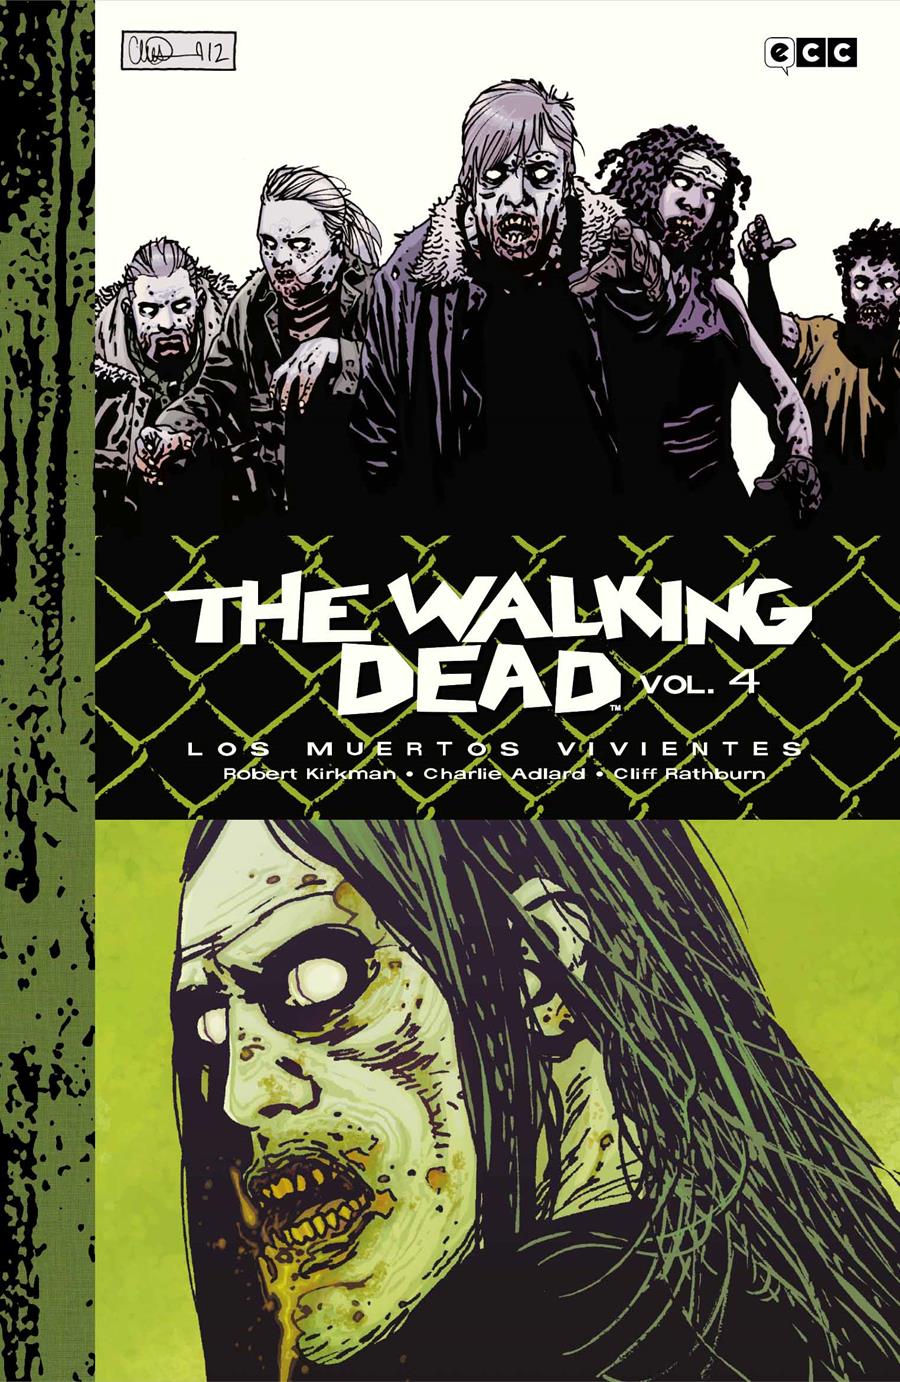 The Walking Dead (Los muertos vivientes) vol. 4 de 9 (Edición Deluxe) | N1123-ECC50 | Charlie Adlard / Robert Kirkman | Terra de Còmic - Tu tienda de cómics online especializada en cómics, manga y merchandising